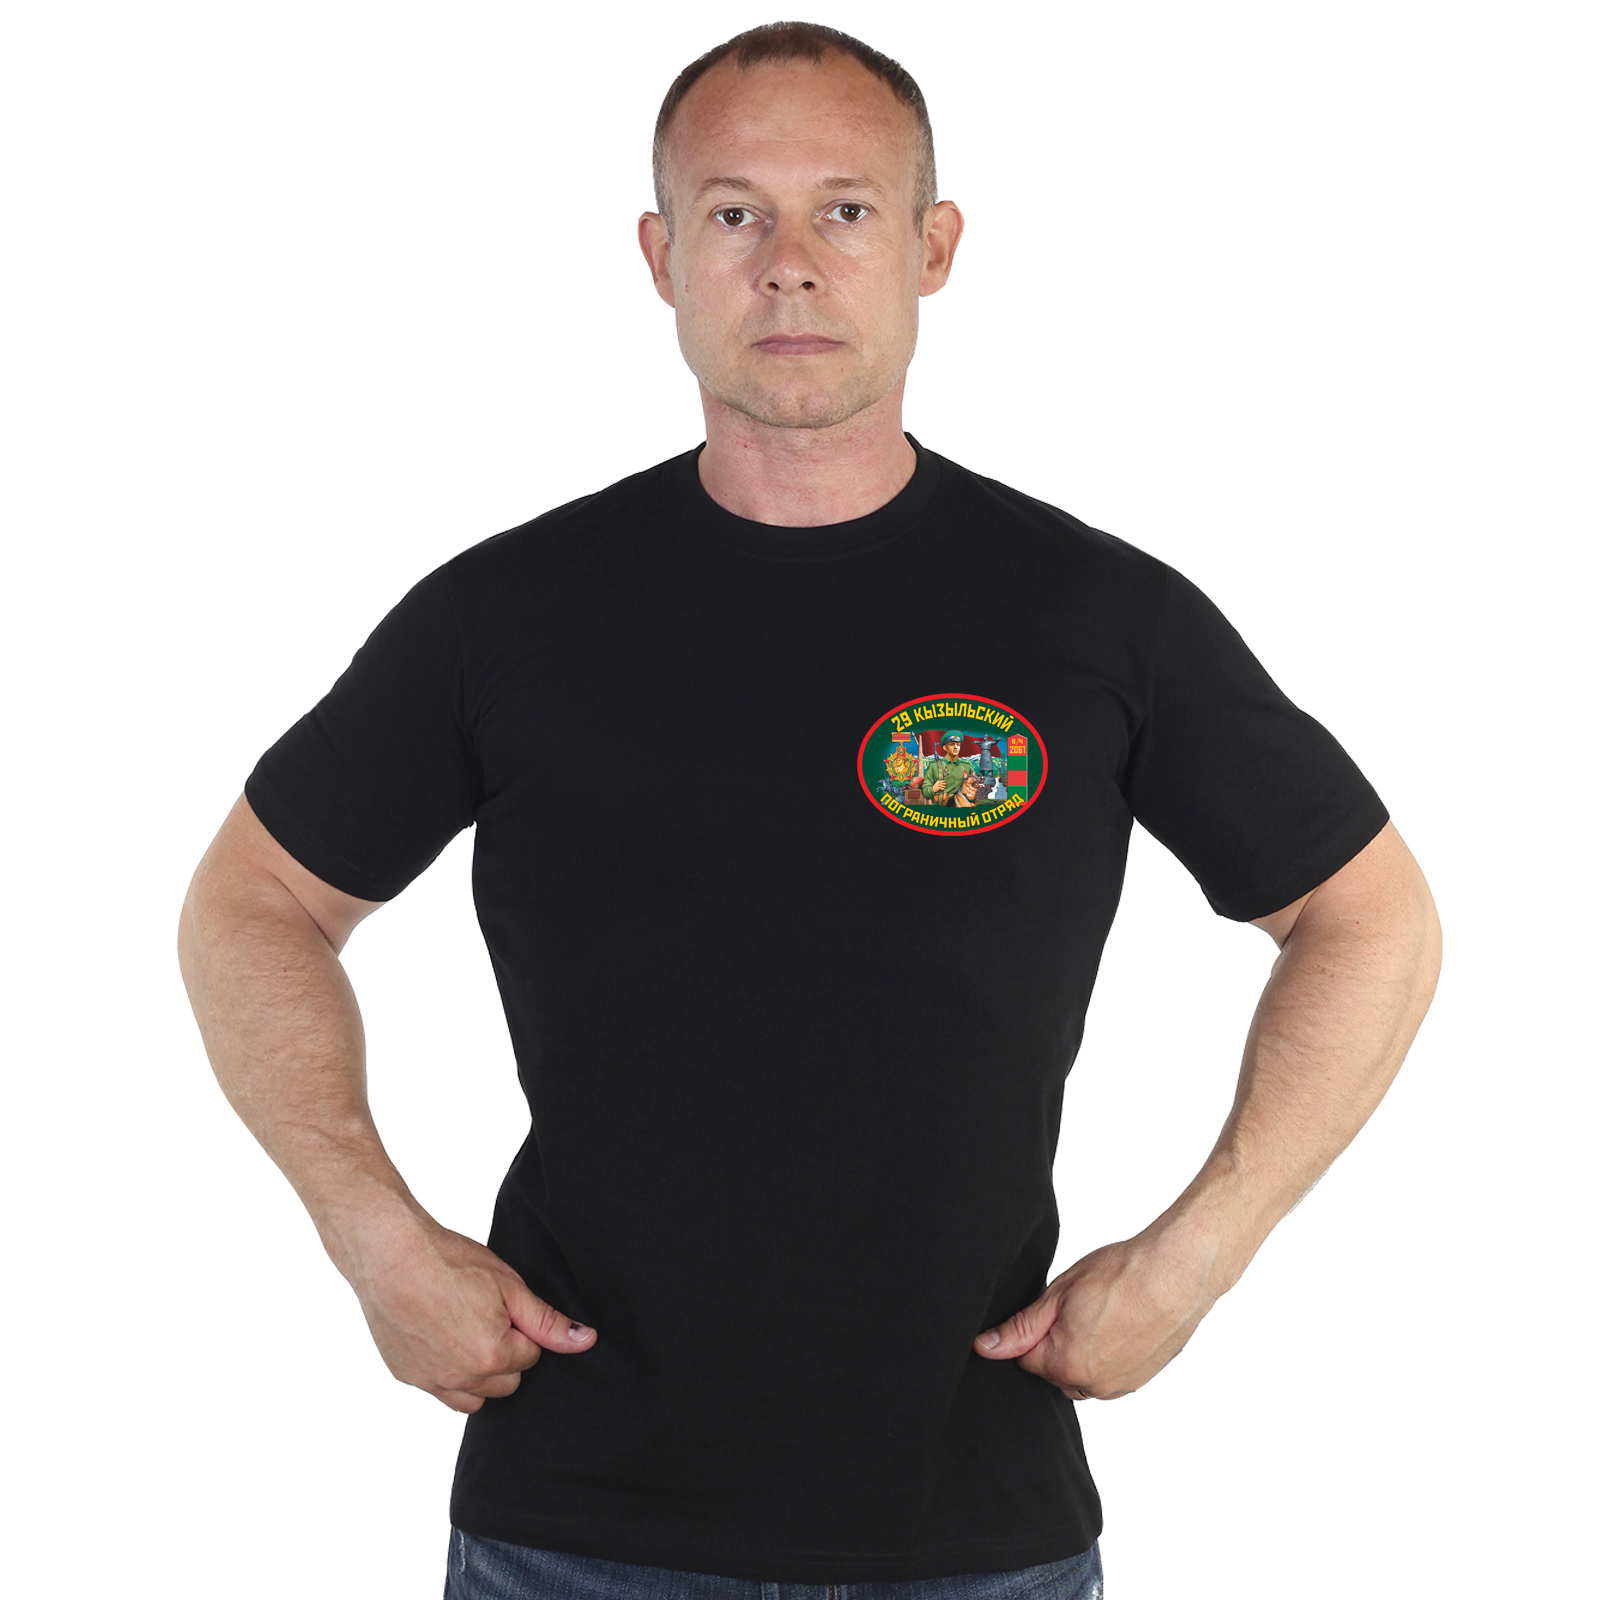 Купить футболку 29 Кызыльский пограничный отряд